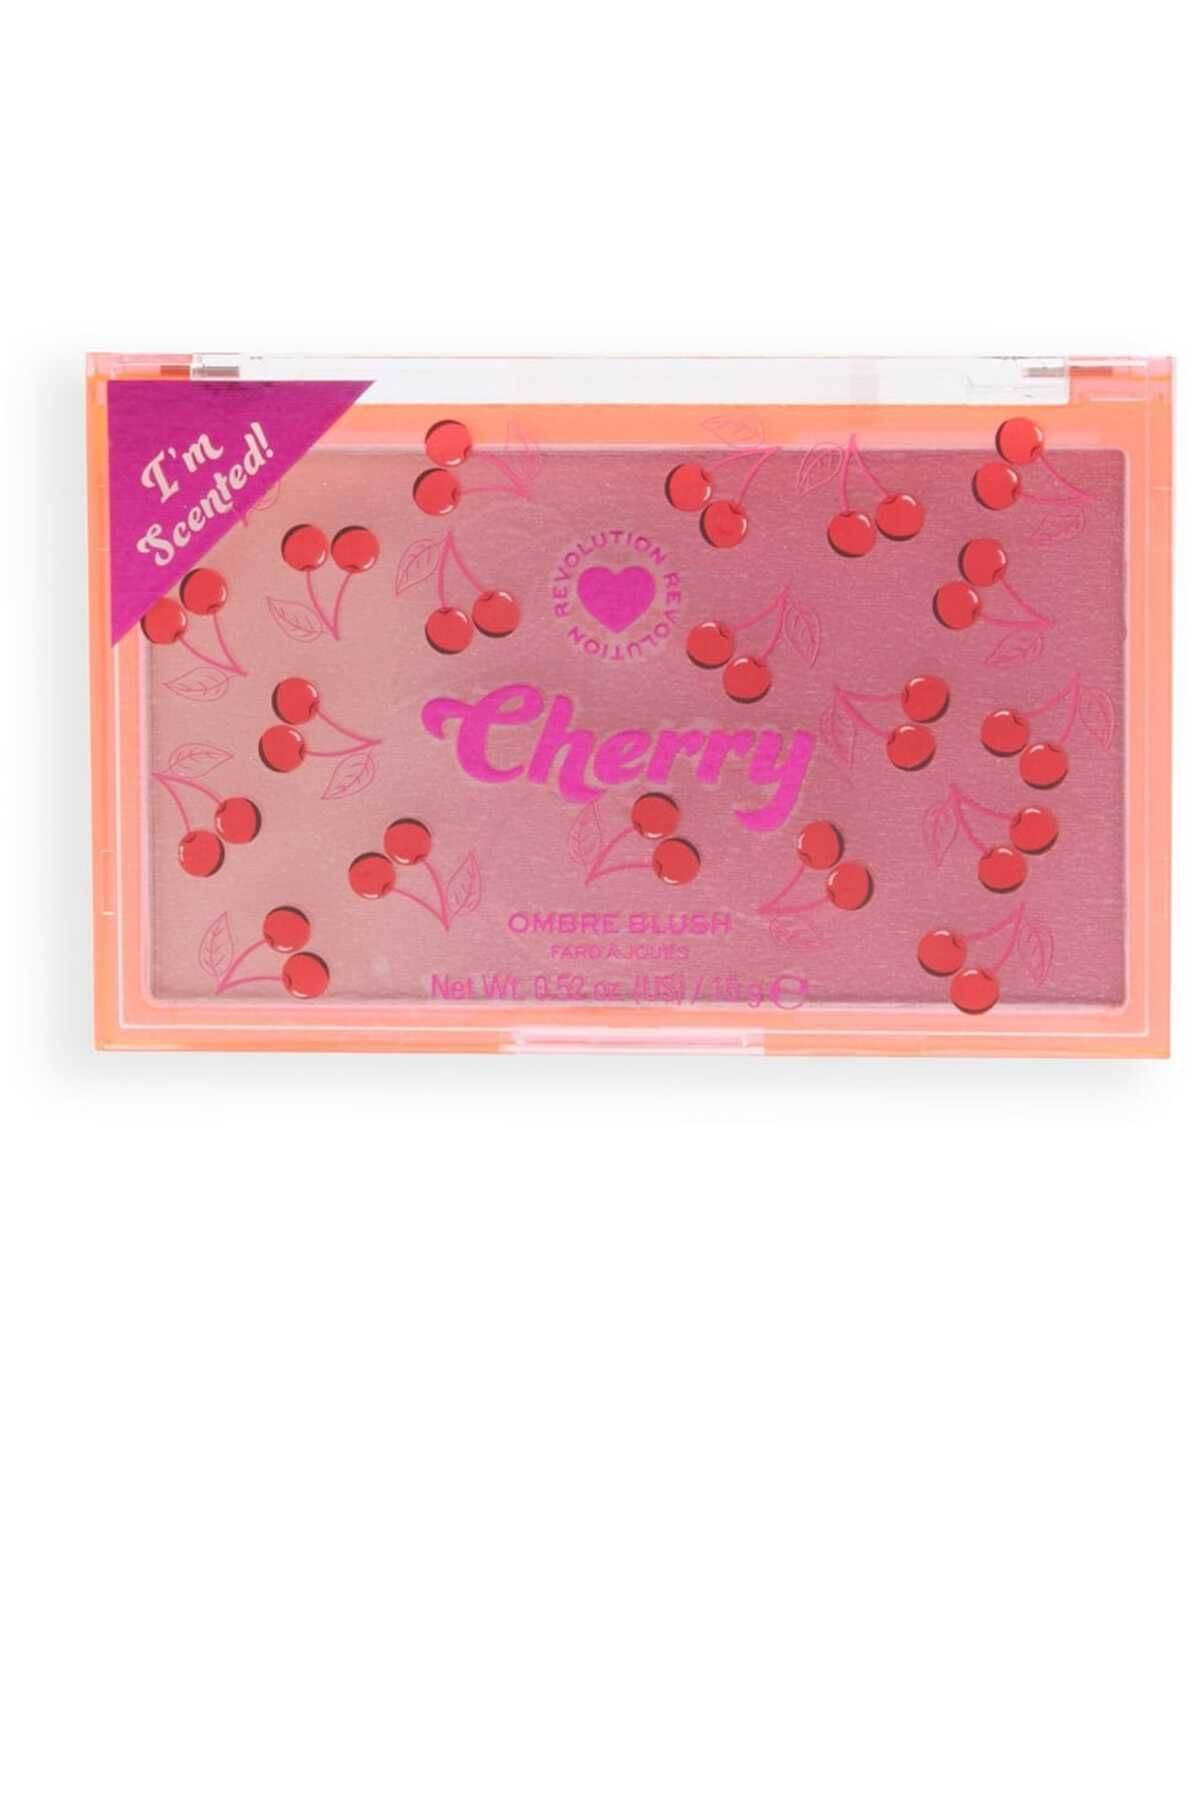 I Heart Revolution Allık Kiraz - Ombre Blush Cherry Işıltılı toz allık ve highligter Pinkrain